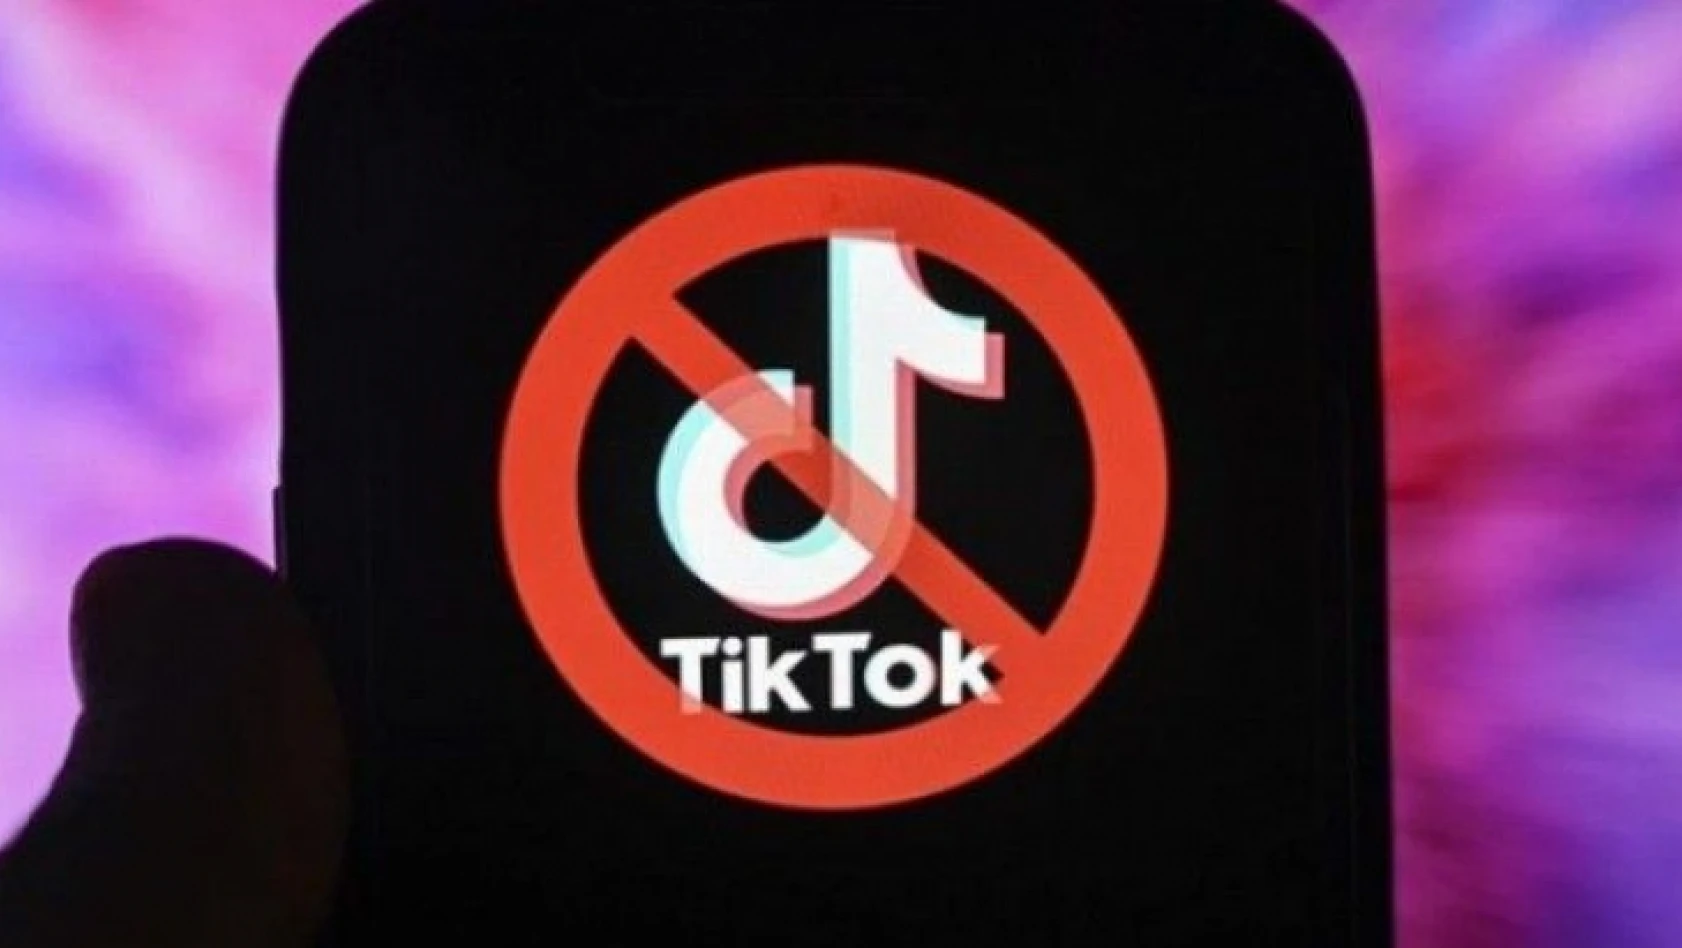 İsveç ordusundan TikTok yasağı